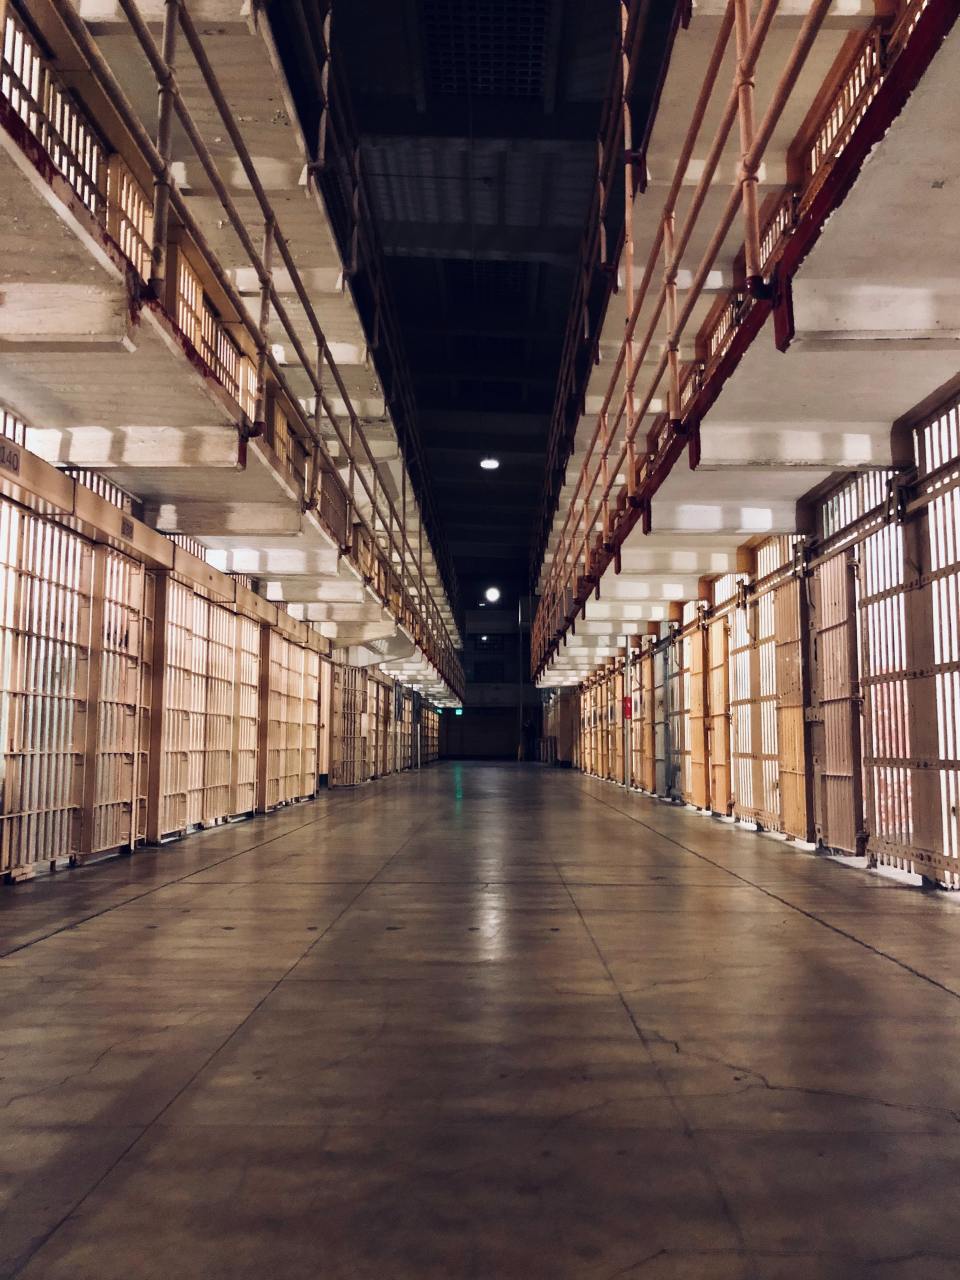 Alcatraz prison cells